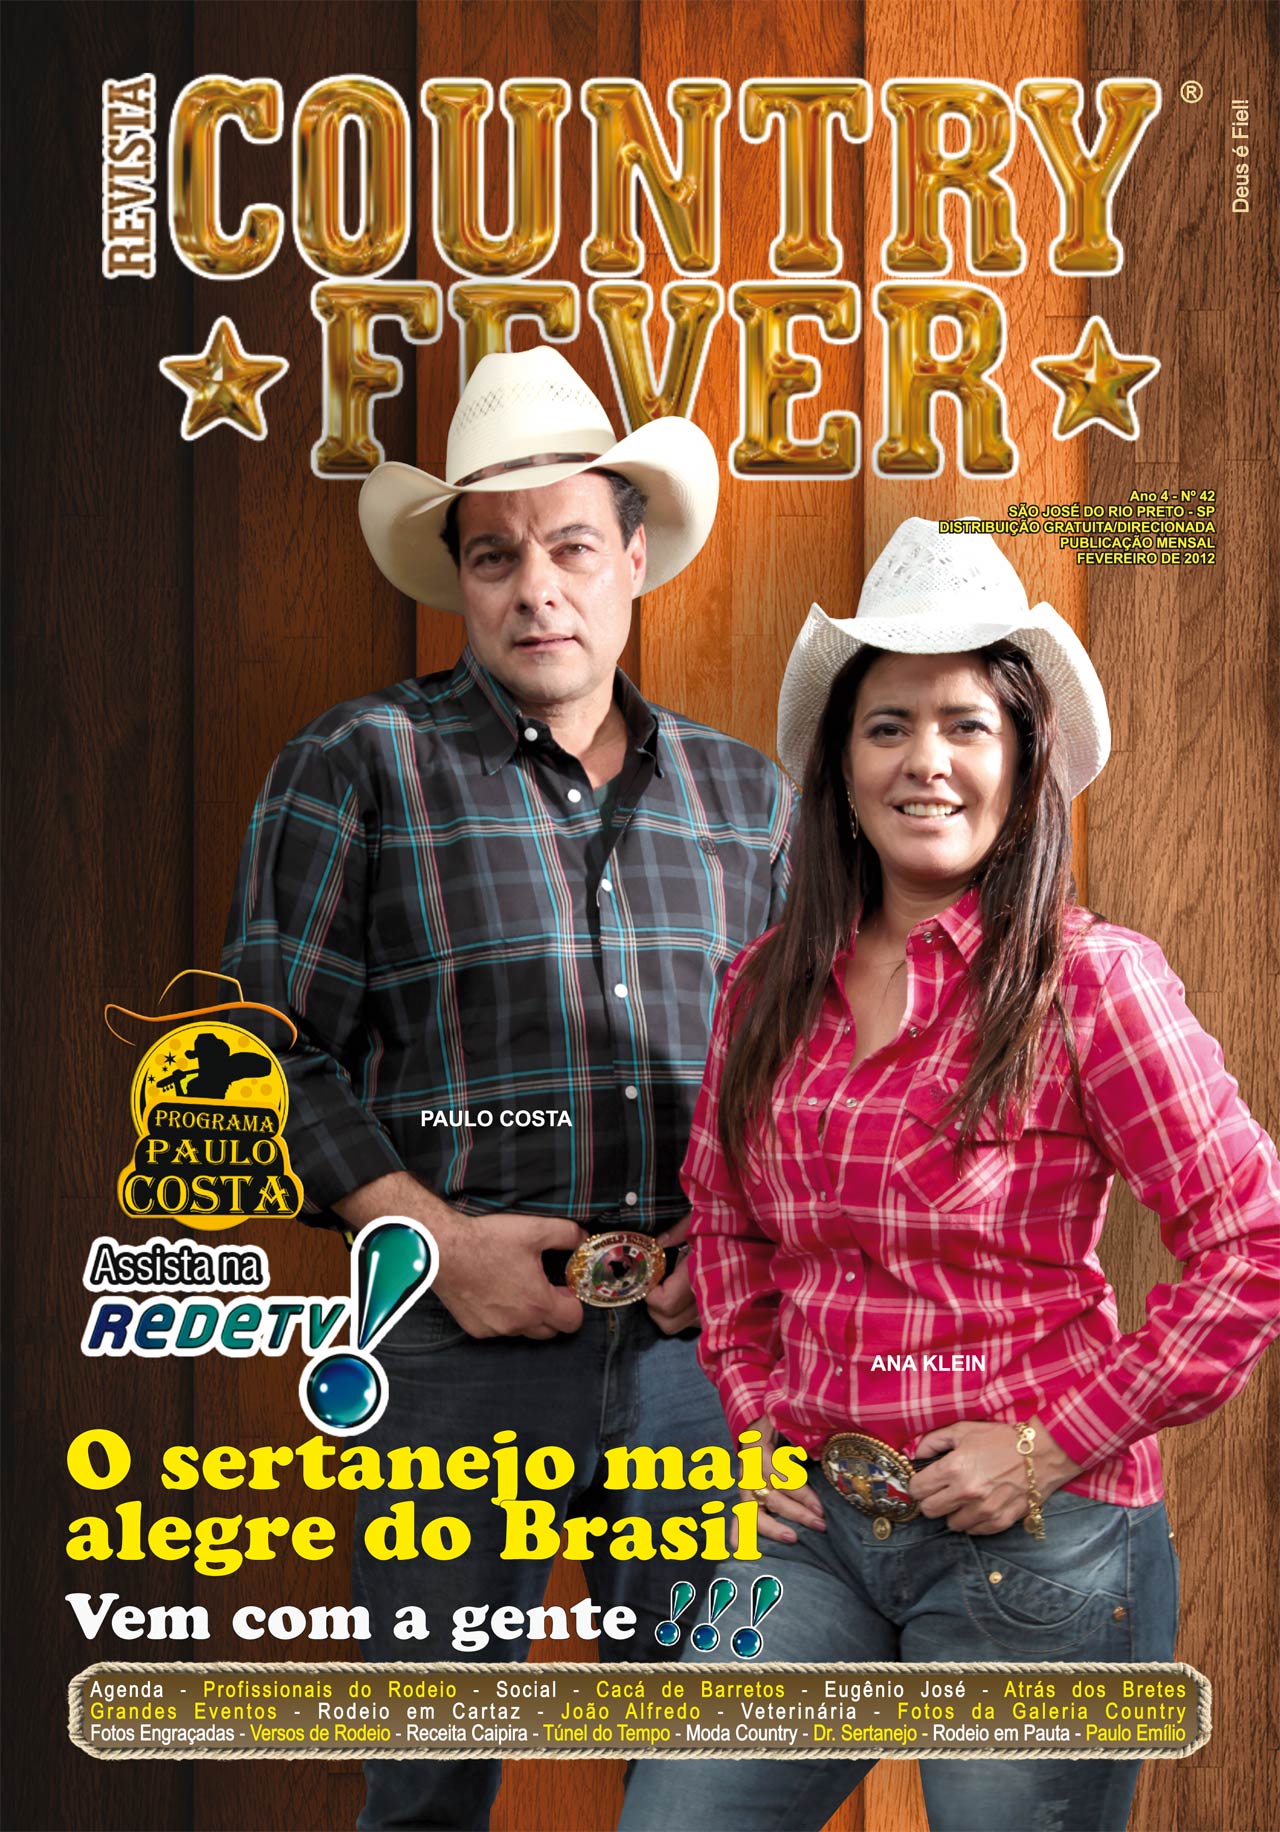 Revista Country Fever - Edição de Fevereiro de 2012